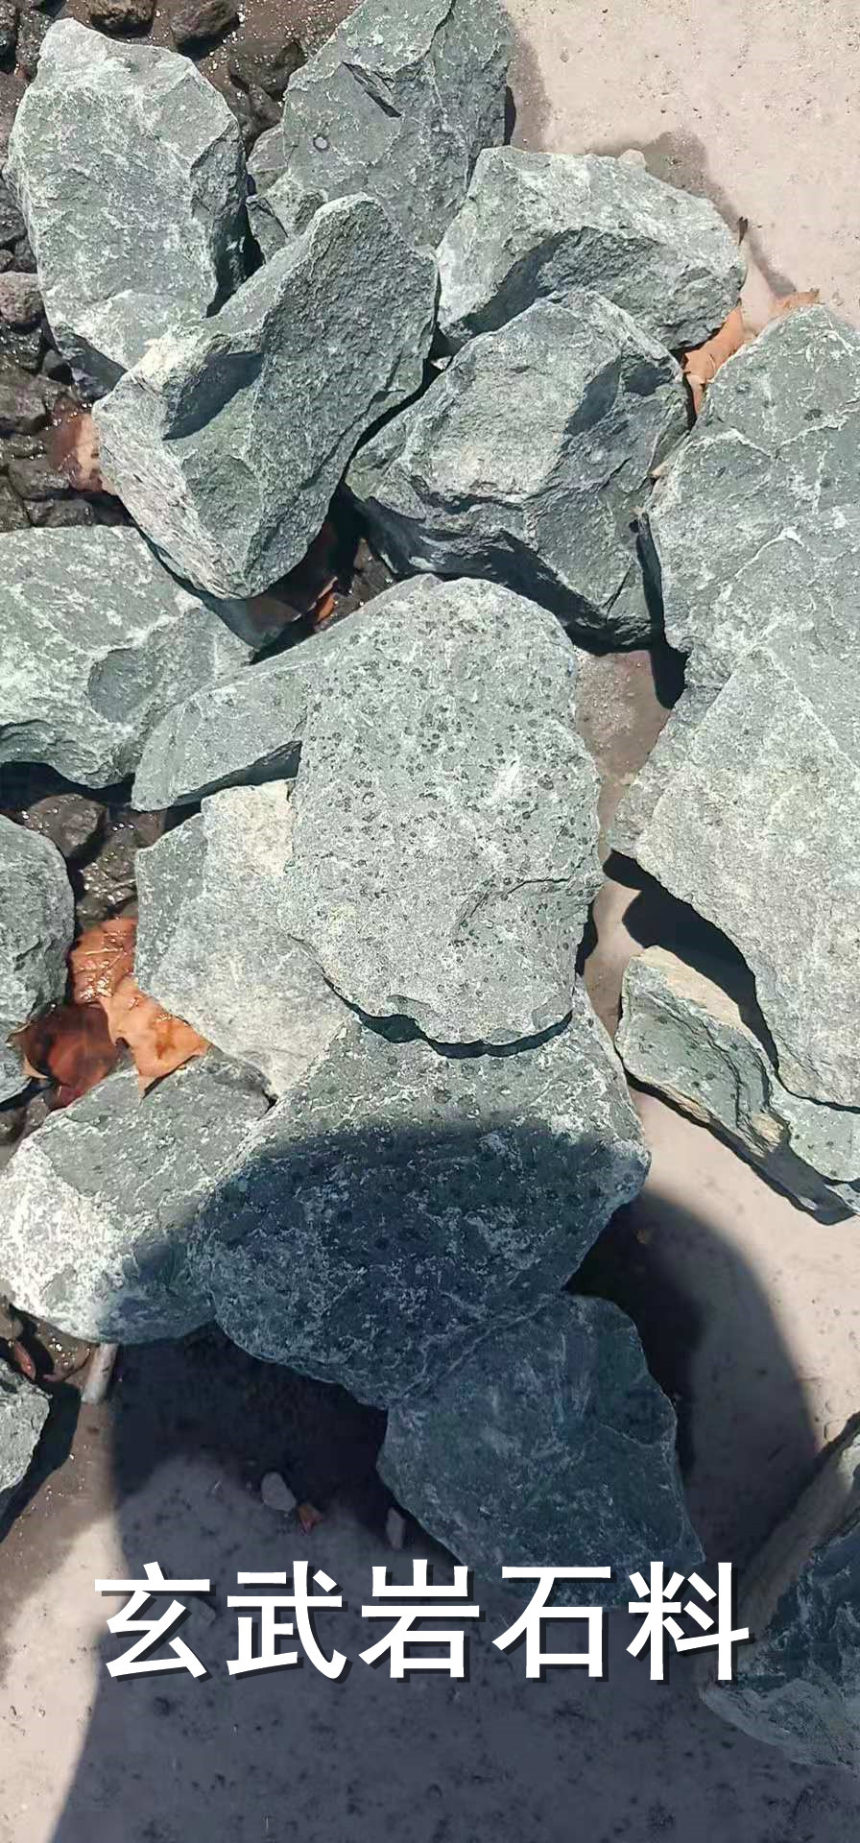 修路用玄武岩石子石料莱州出售--展飞石材